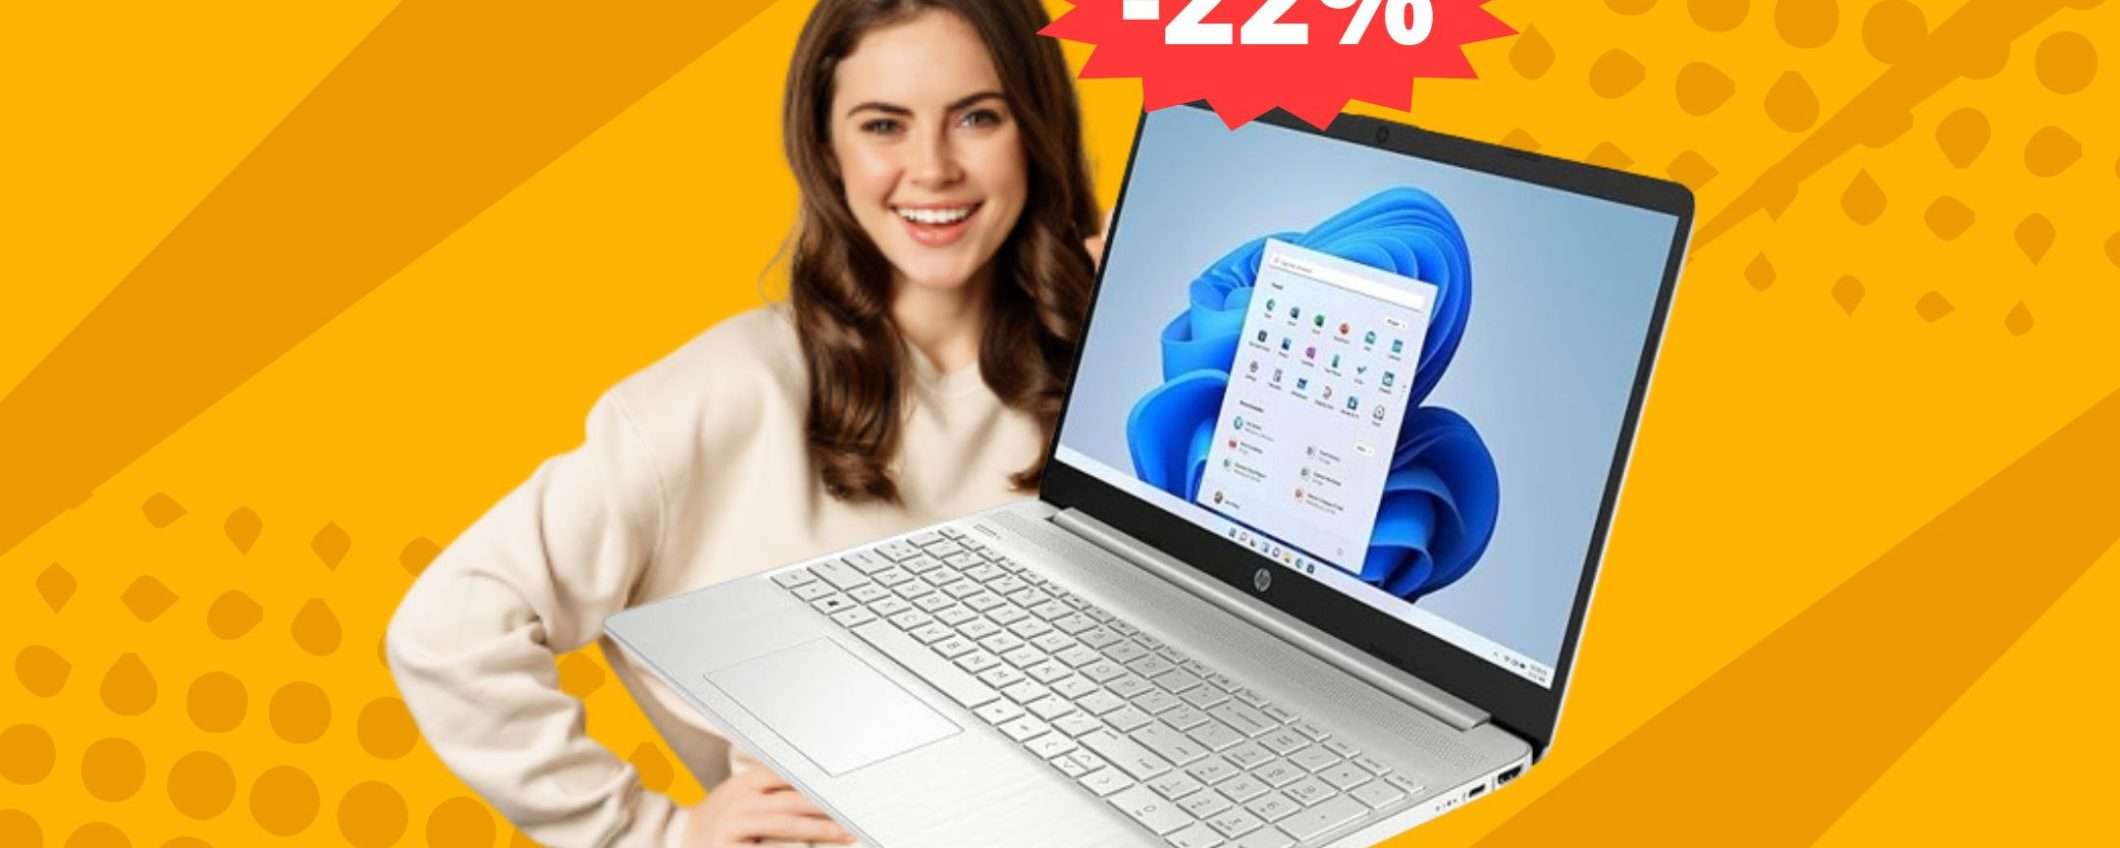 Notebook HP 15: IMPOSSIBILE resistergli a questo prezzo